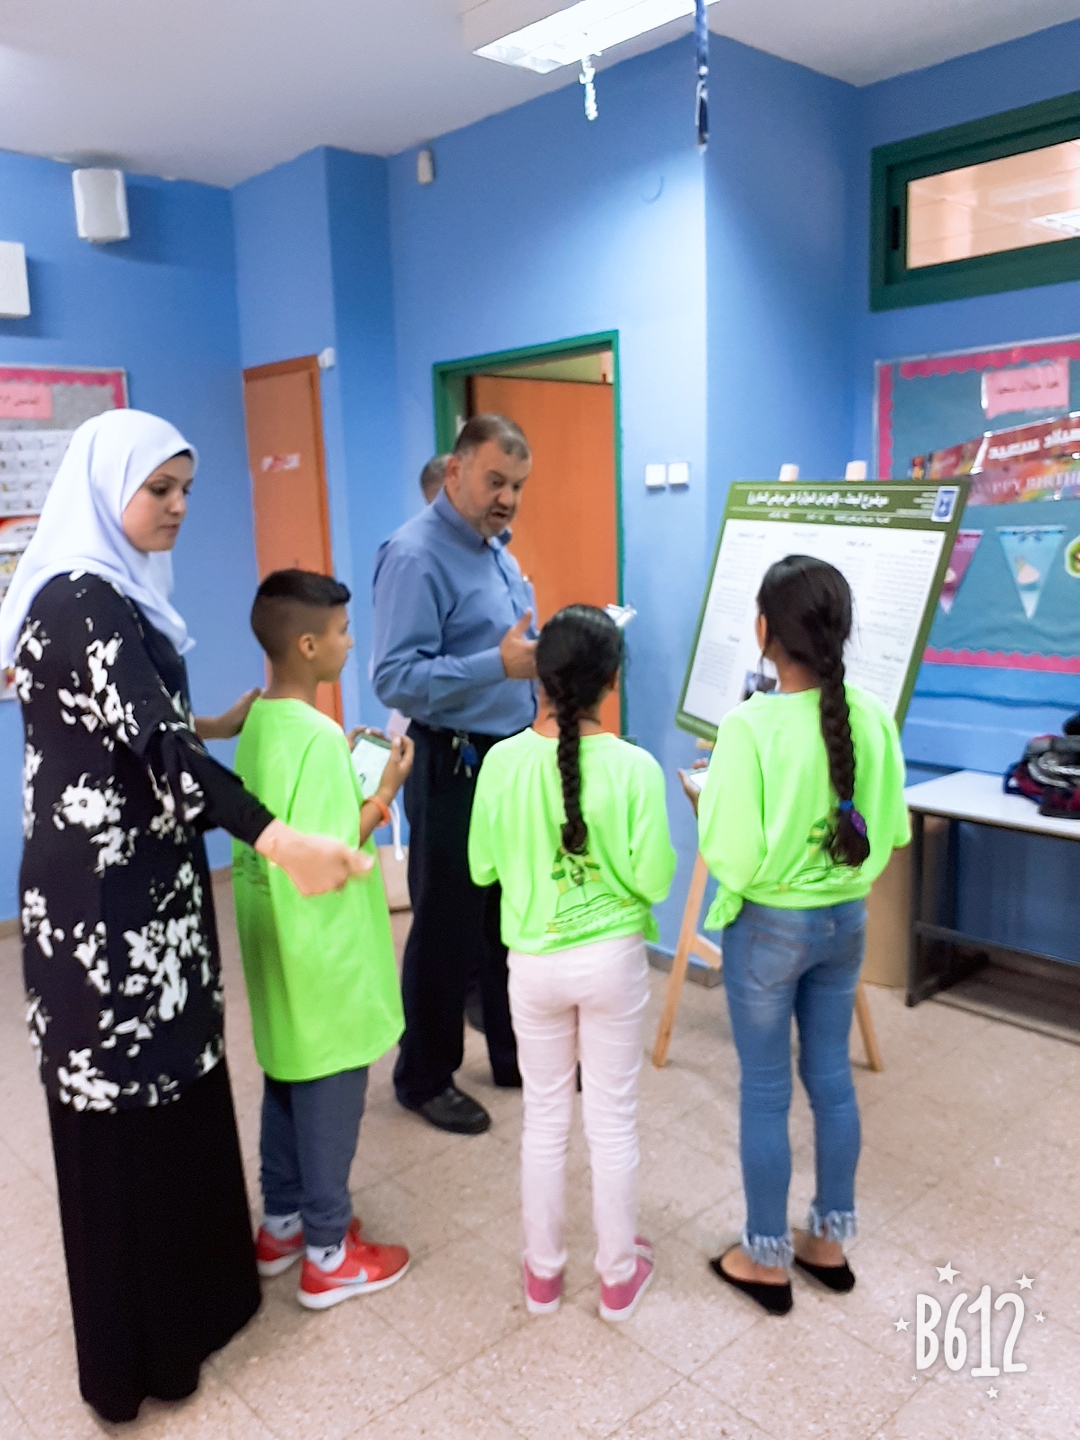 معرض الأبحاث العلمية الثالث على التوالي في مدرسة ابن خلدون الابتدائية كفر قاسم 2017-2018